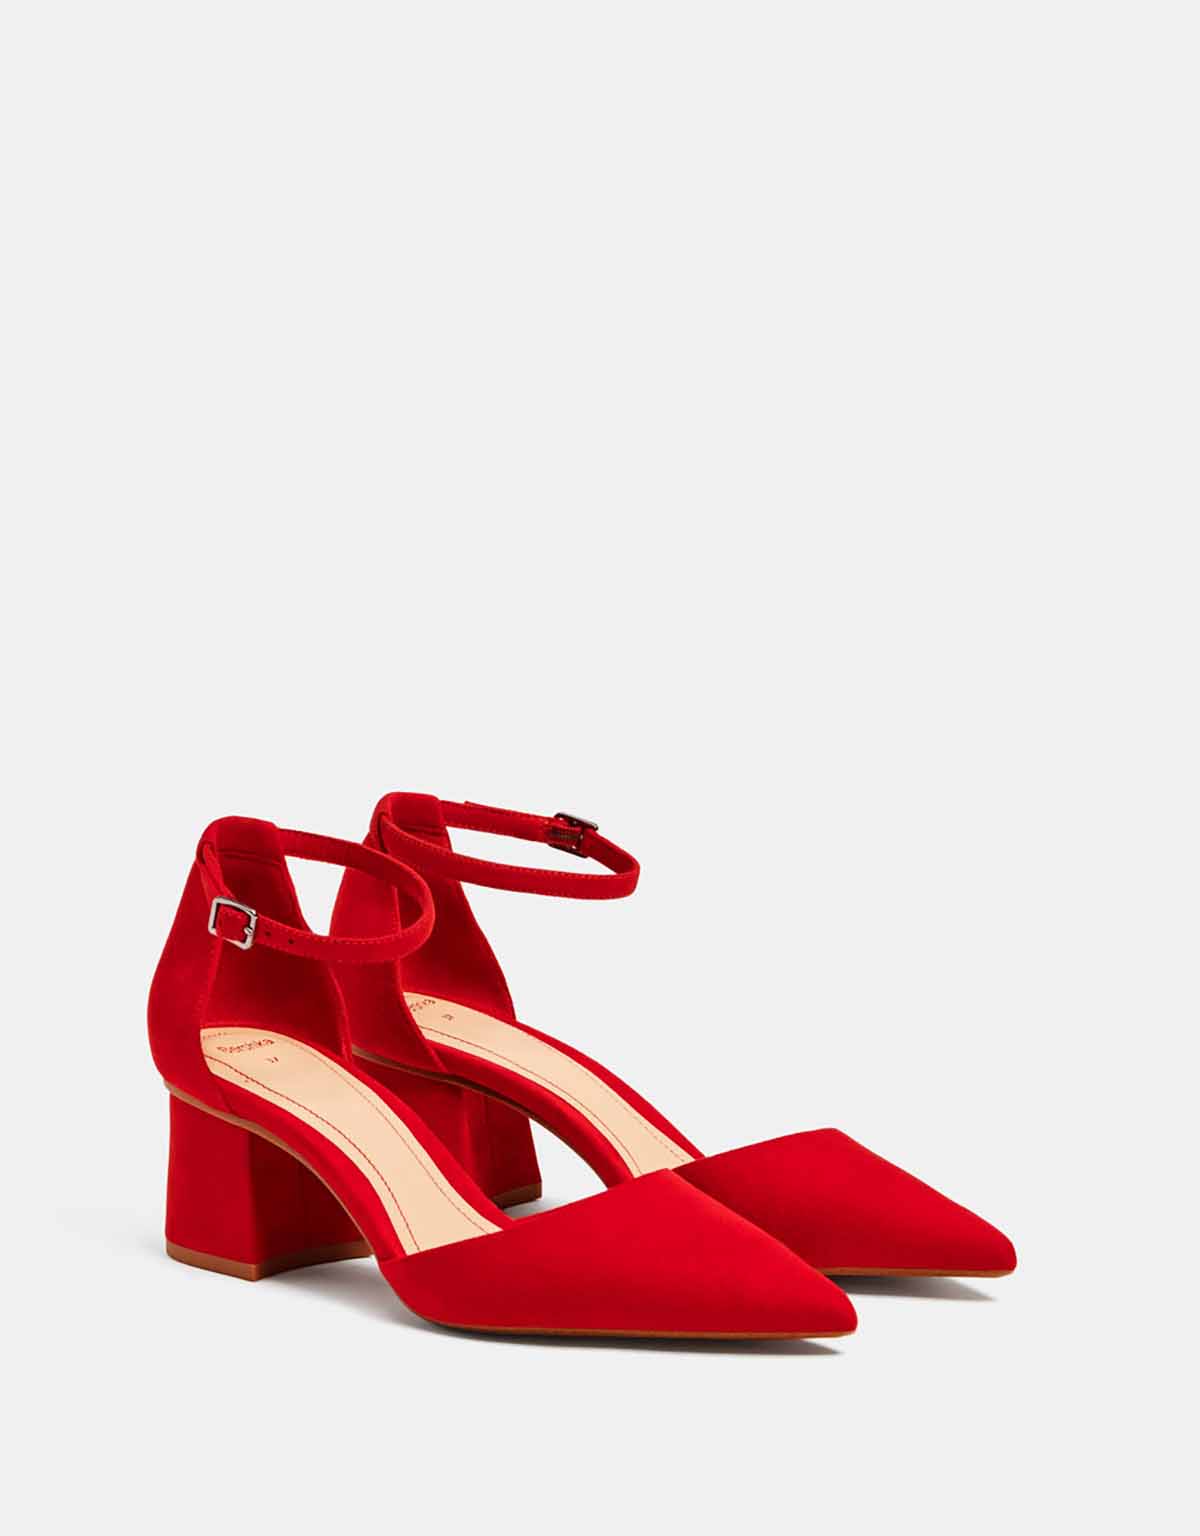 25 estilos de zapatos rojos que darán sensualidad a tu look para combinar!